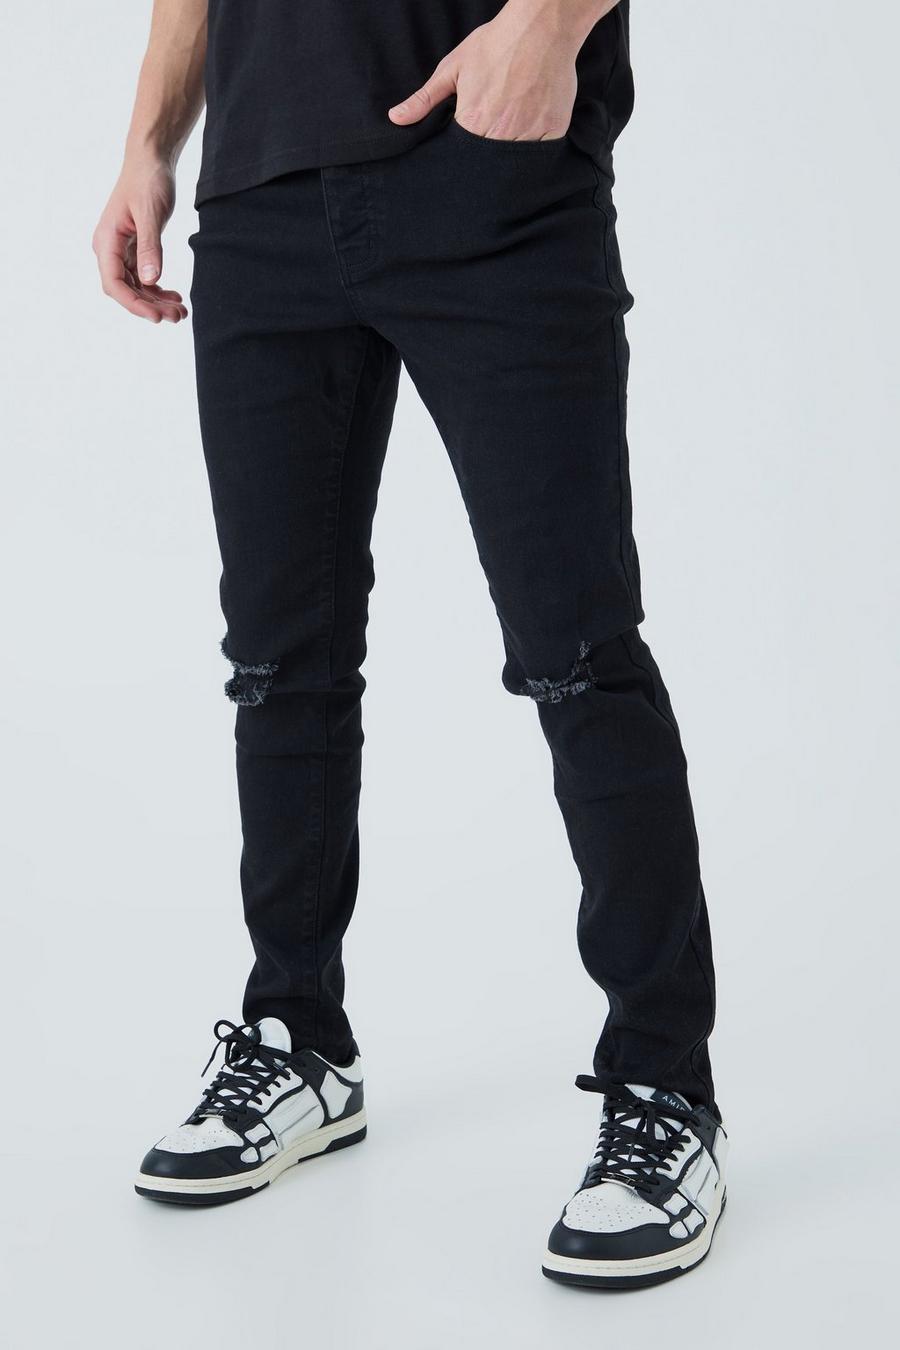 Jeans Skinny Fit con strappi sul ginocchio, Black negro